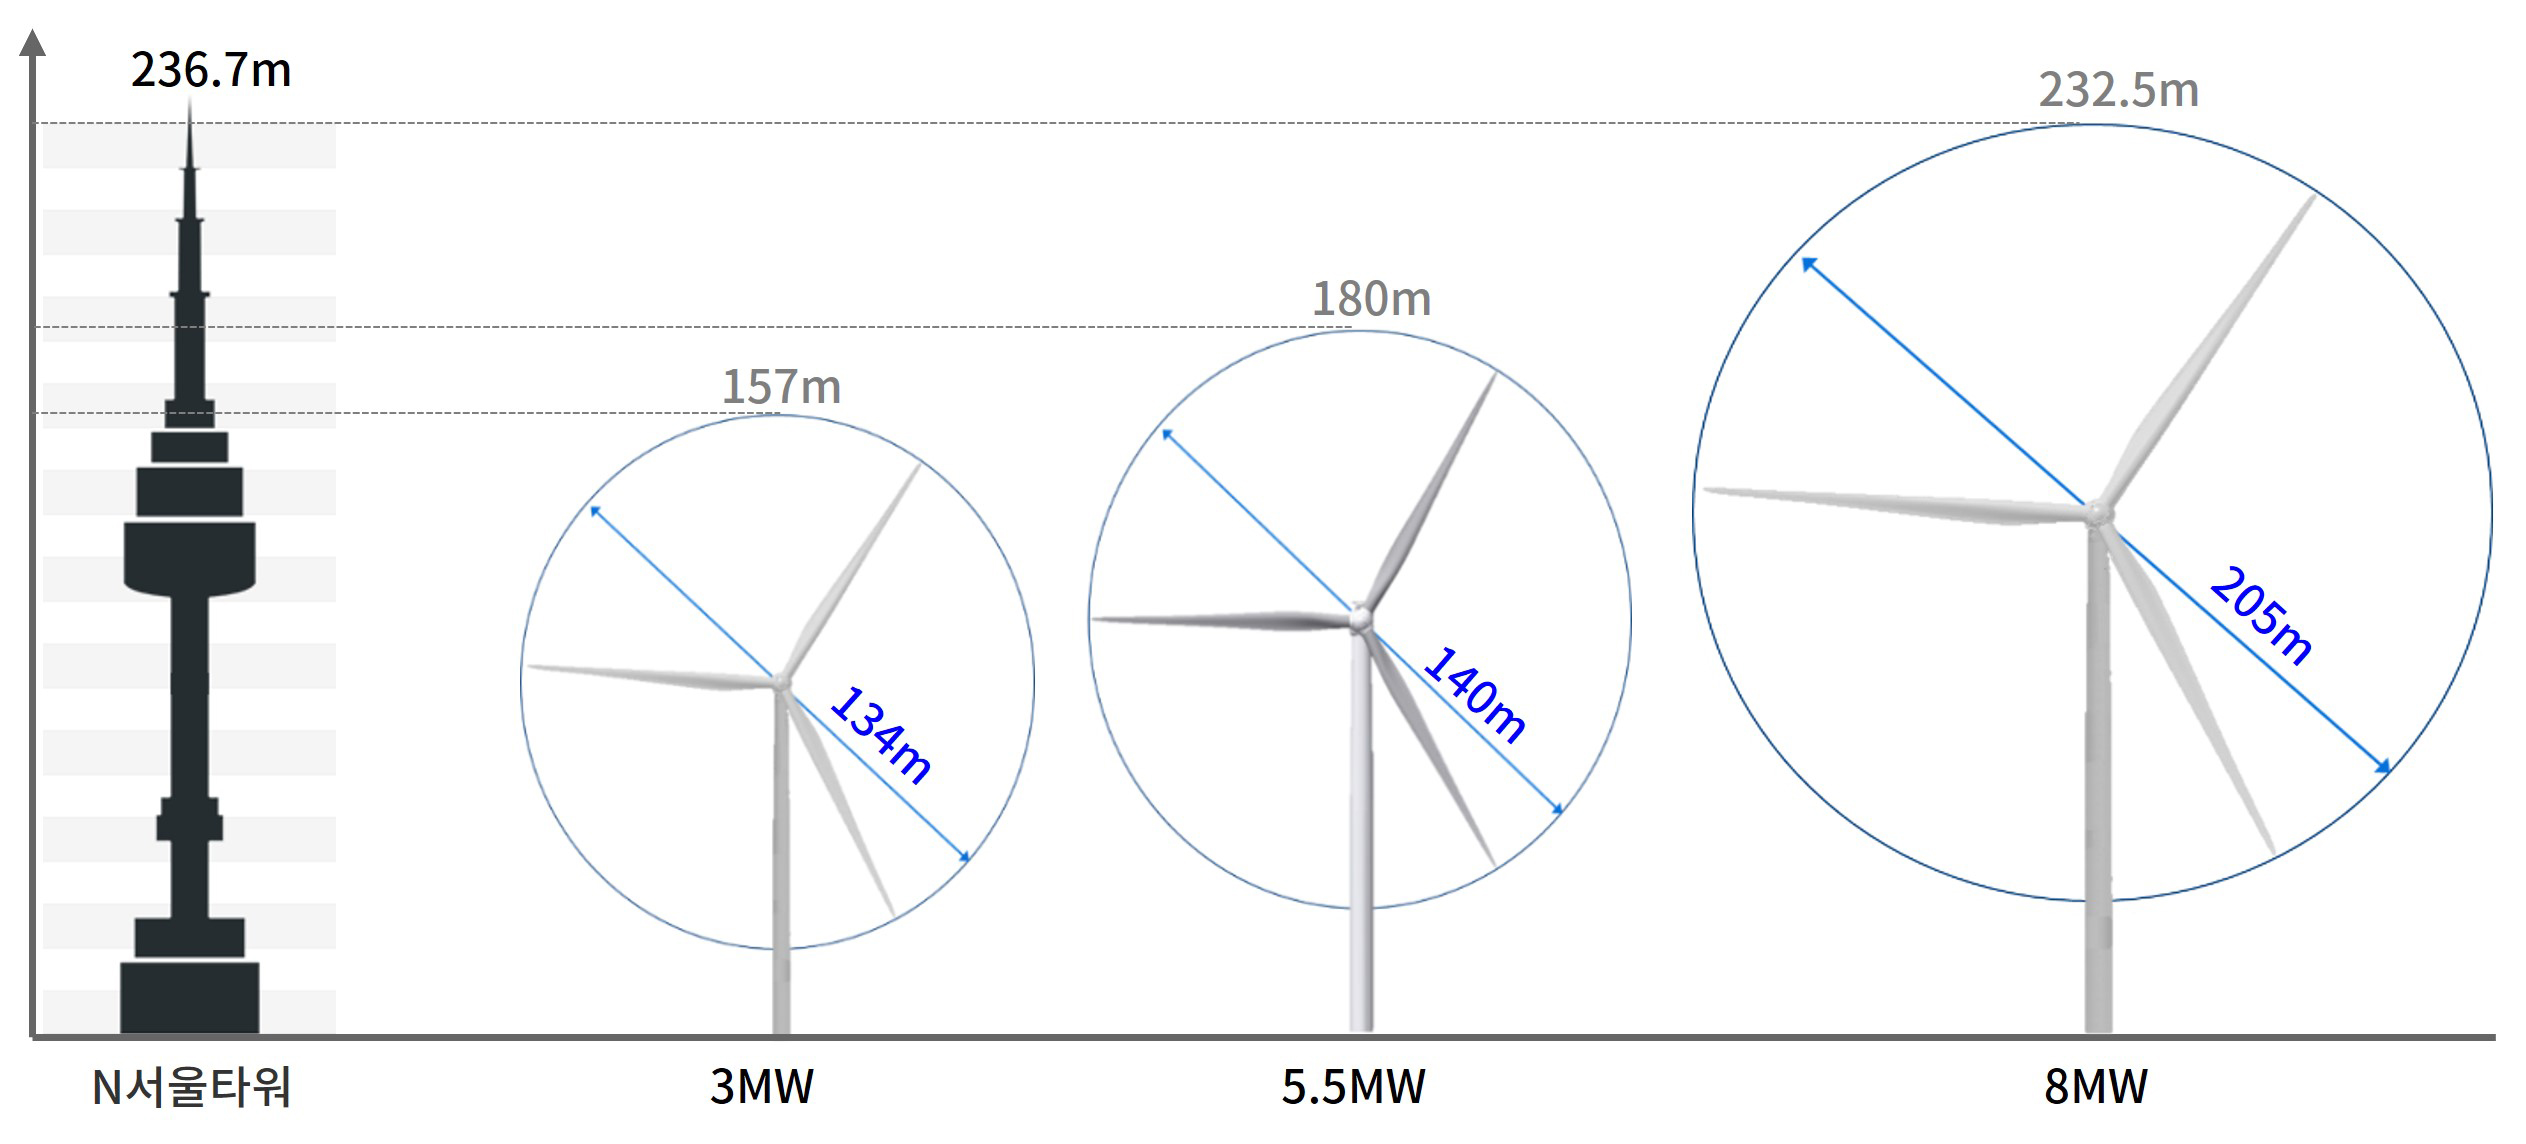 그림. 두산중공업의 풍력발전기 모델 라인업과 N서울타워 높이 비교